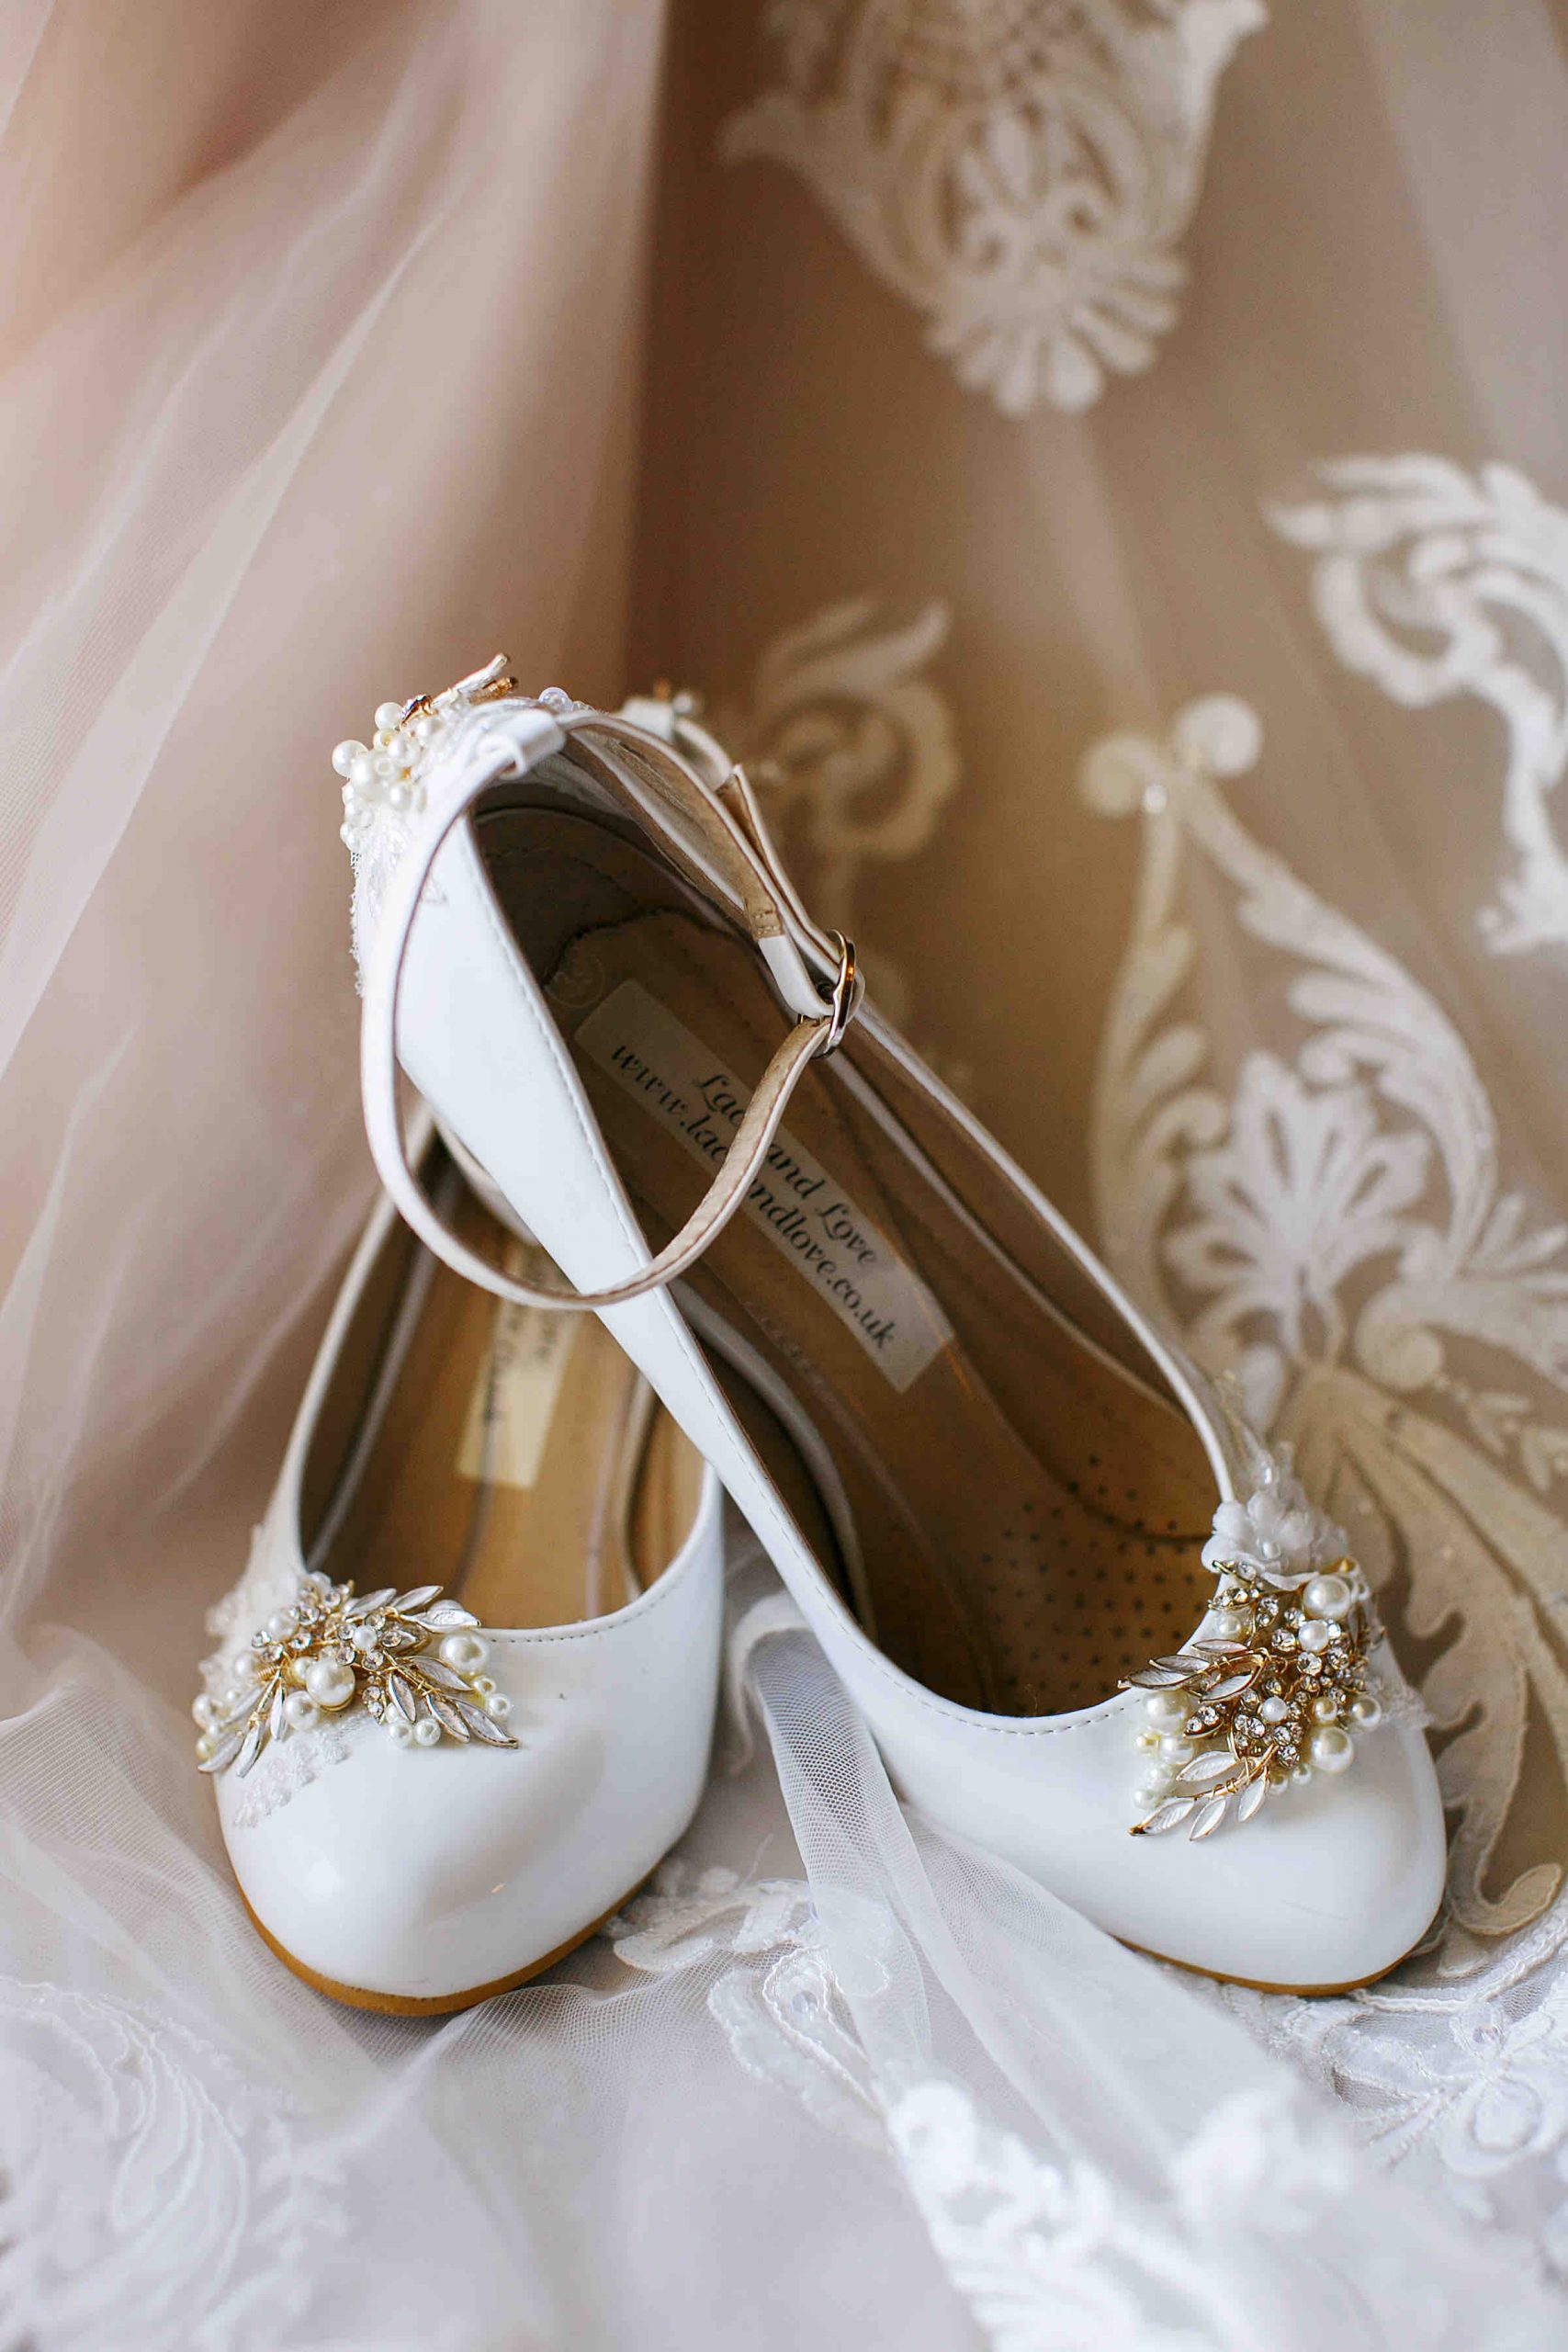 4 Wedding Shoes scaled